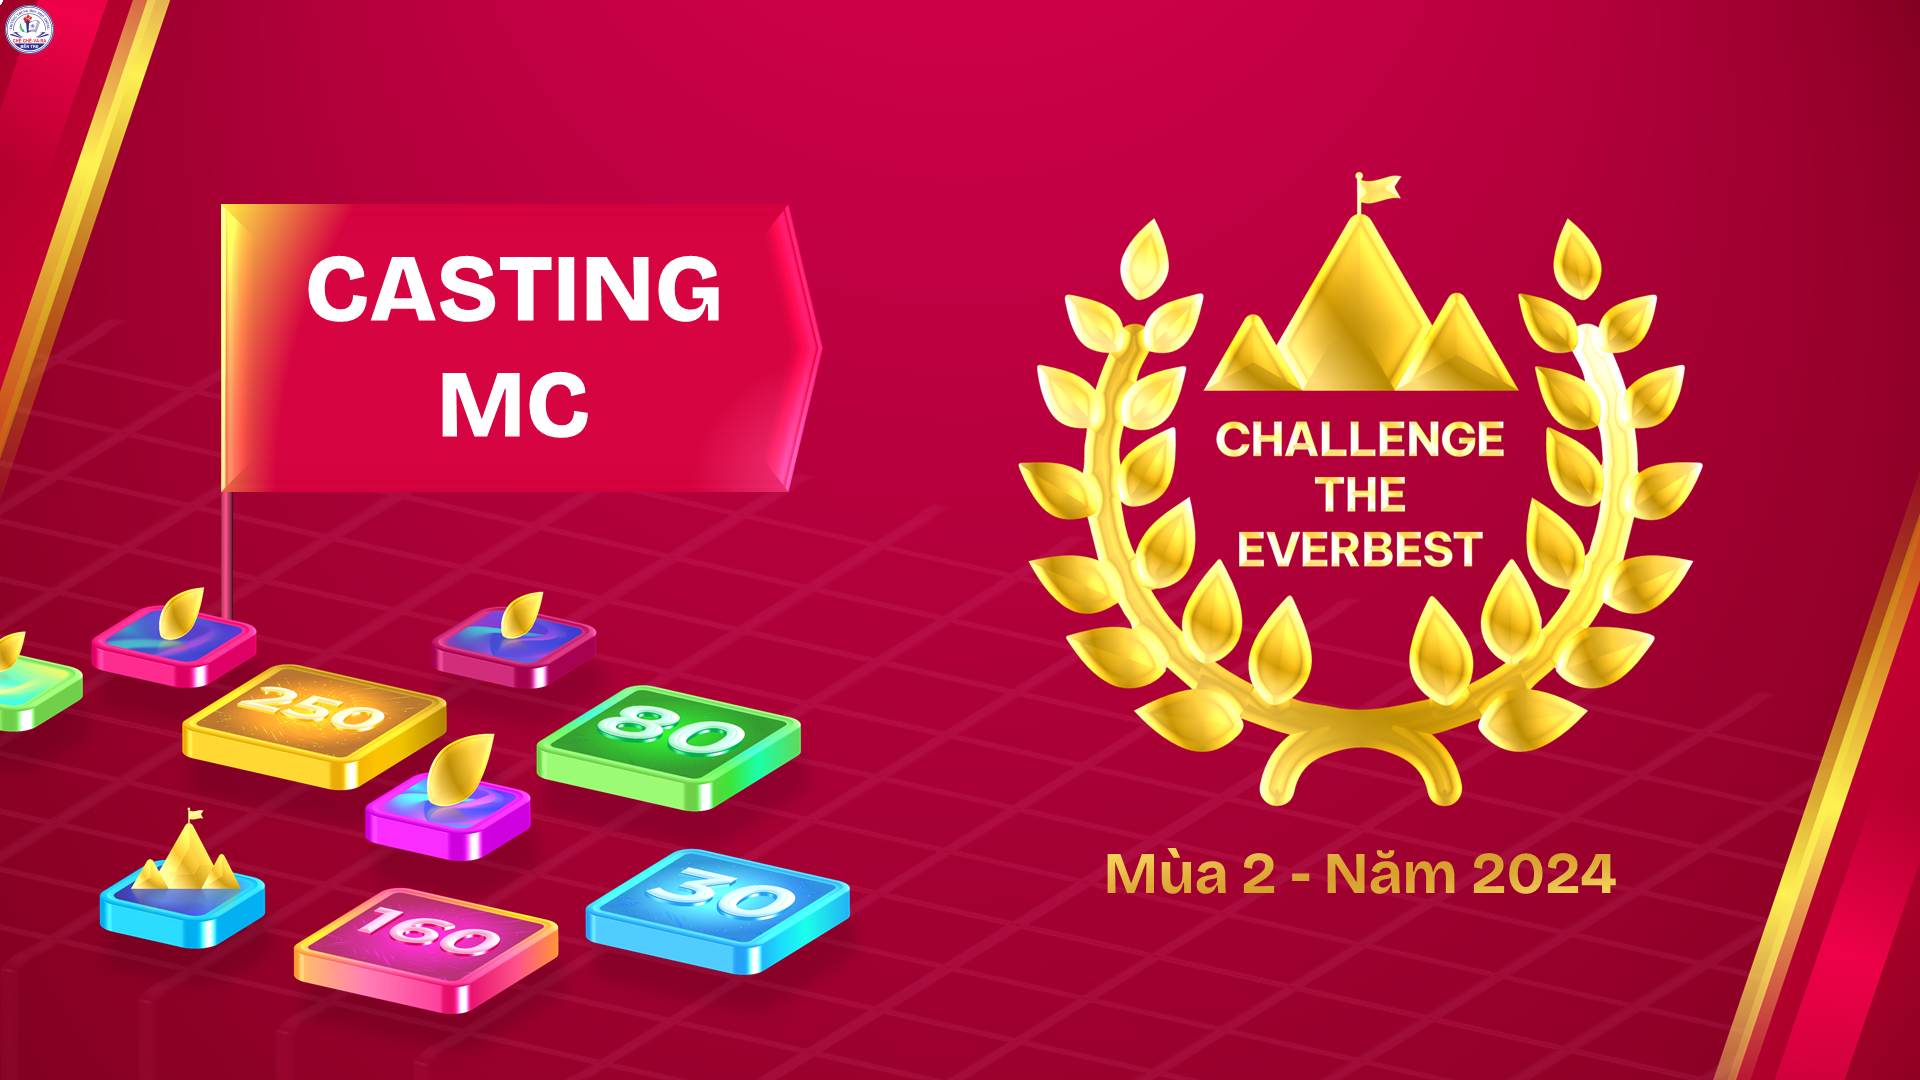 Thể lệ casting MC của cuộc thi "Challenge the Everbest" mùa 2 - năm 2024